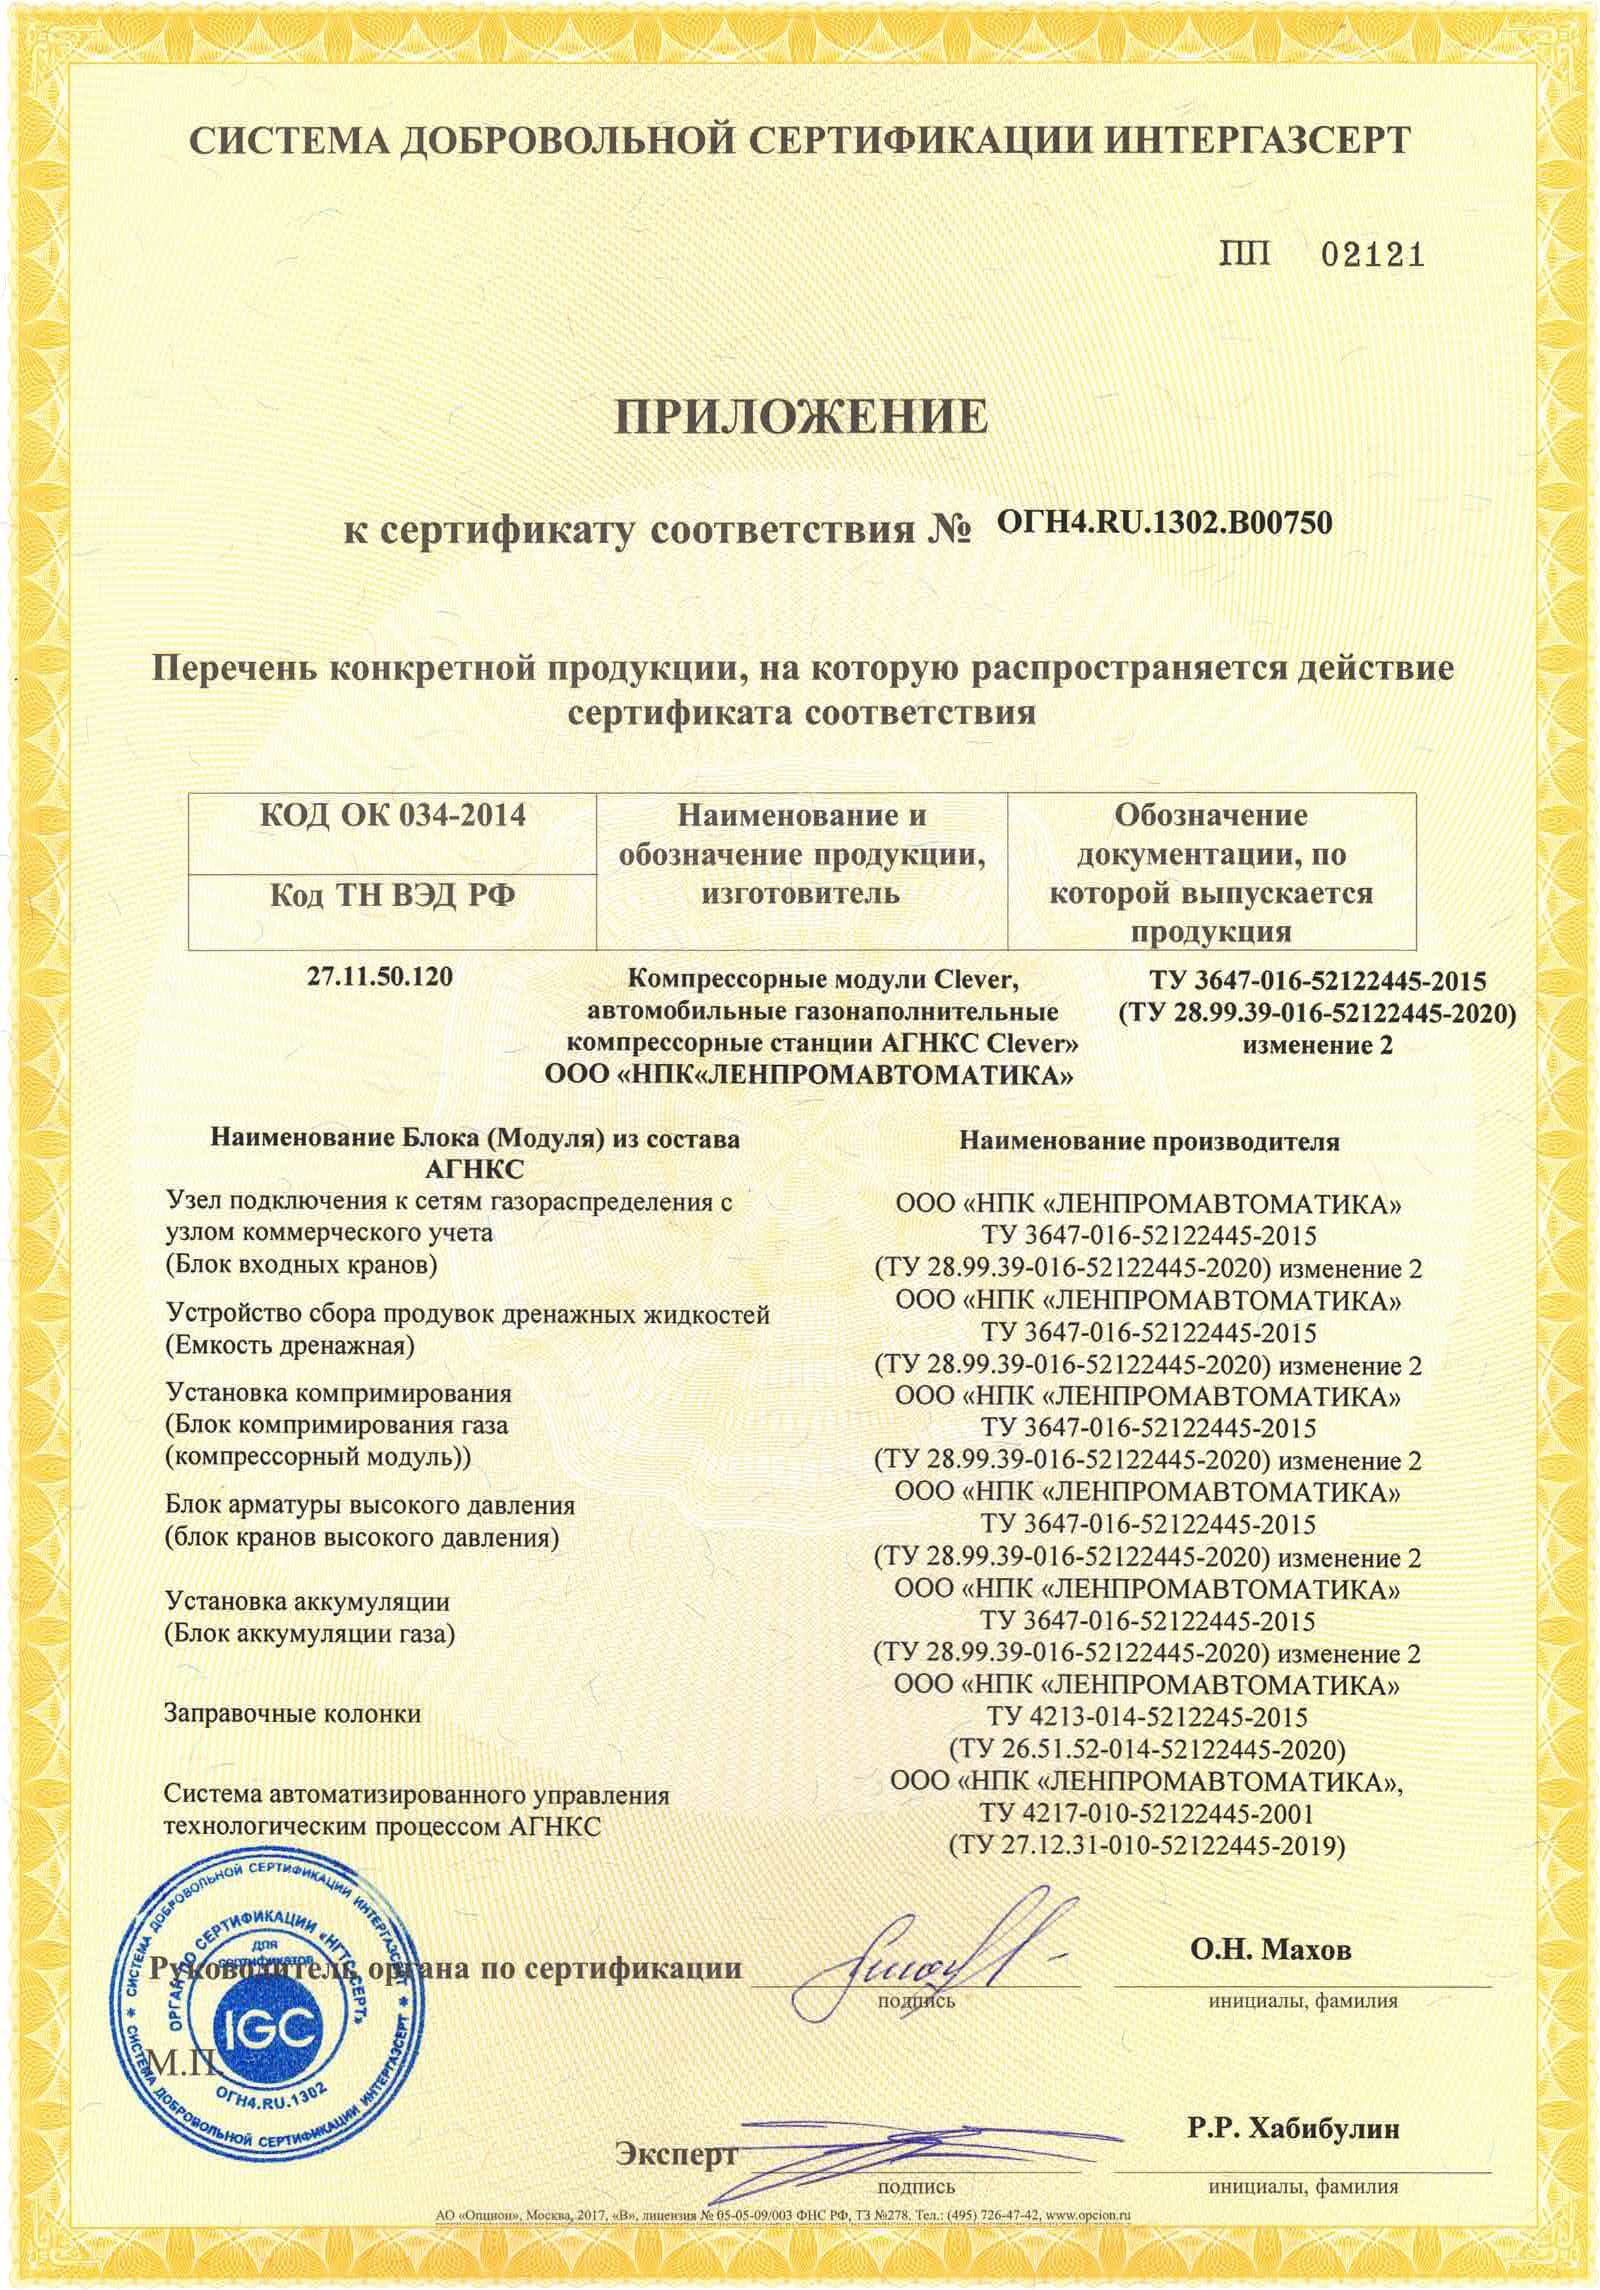 Сертификат соответствия АГНКС Clever требованиям СТО Газпром 9001 (ИНТЕРГАЗСЕРТ). Стр. 2